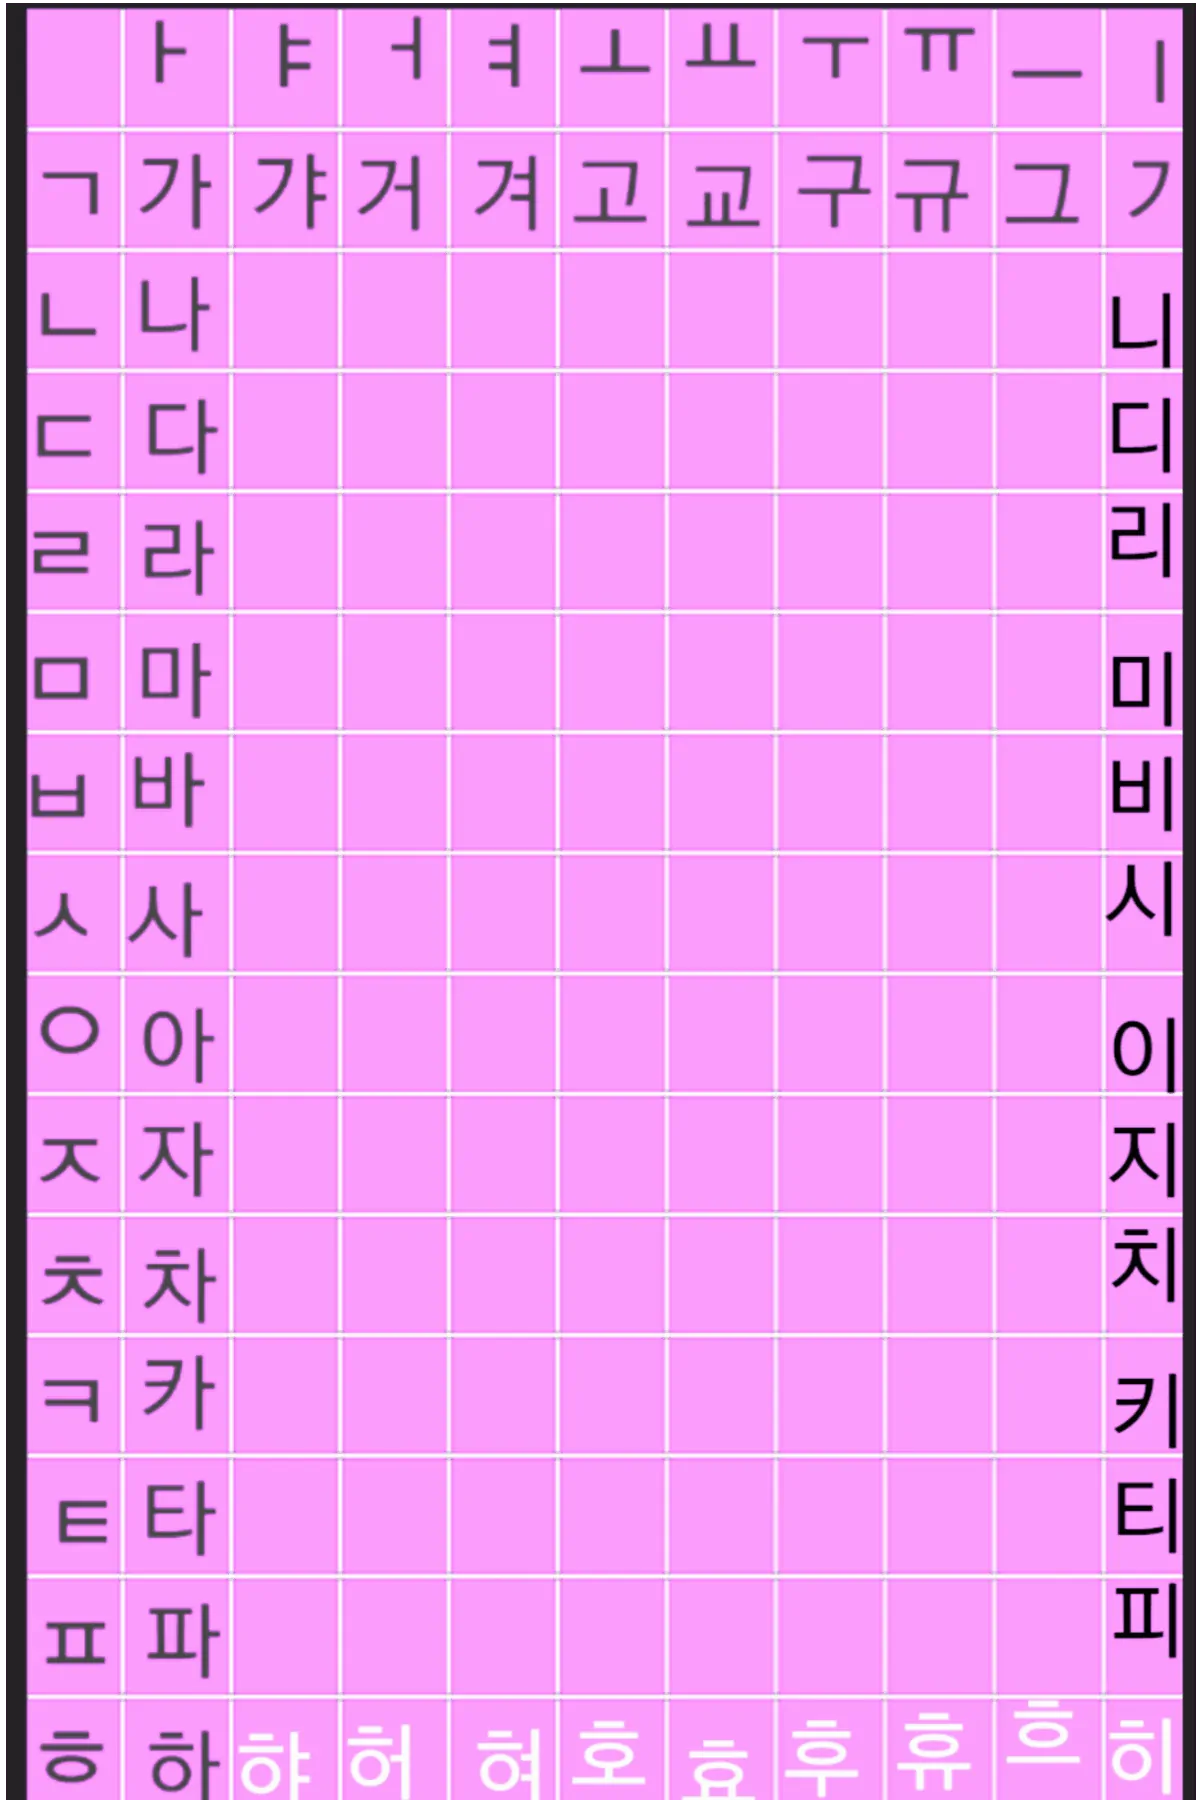 Korean letters